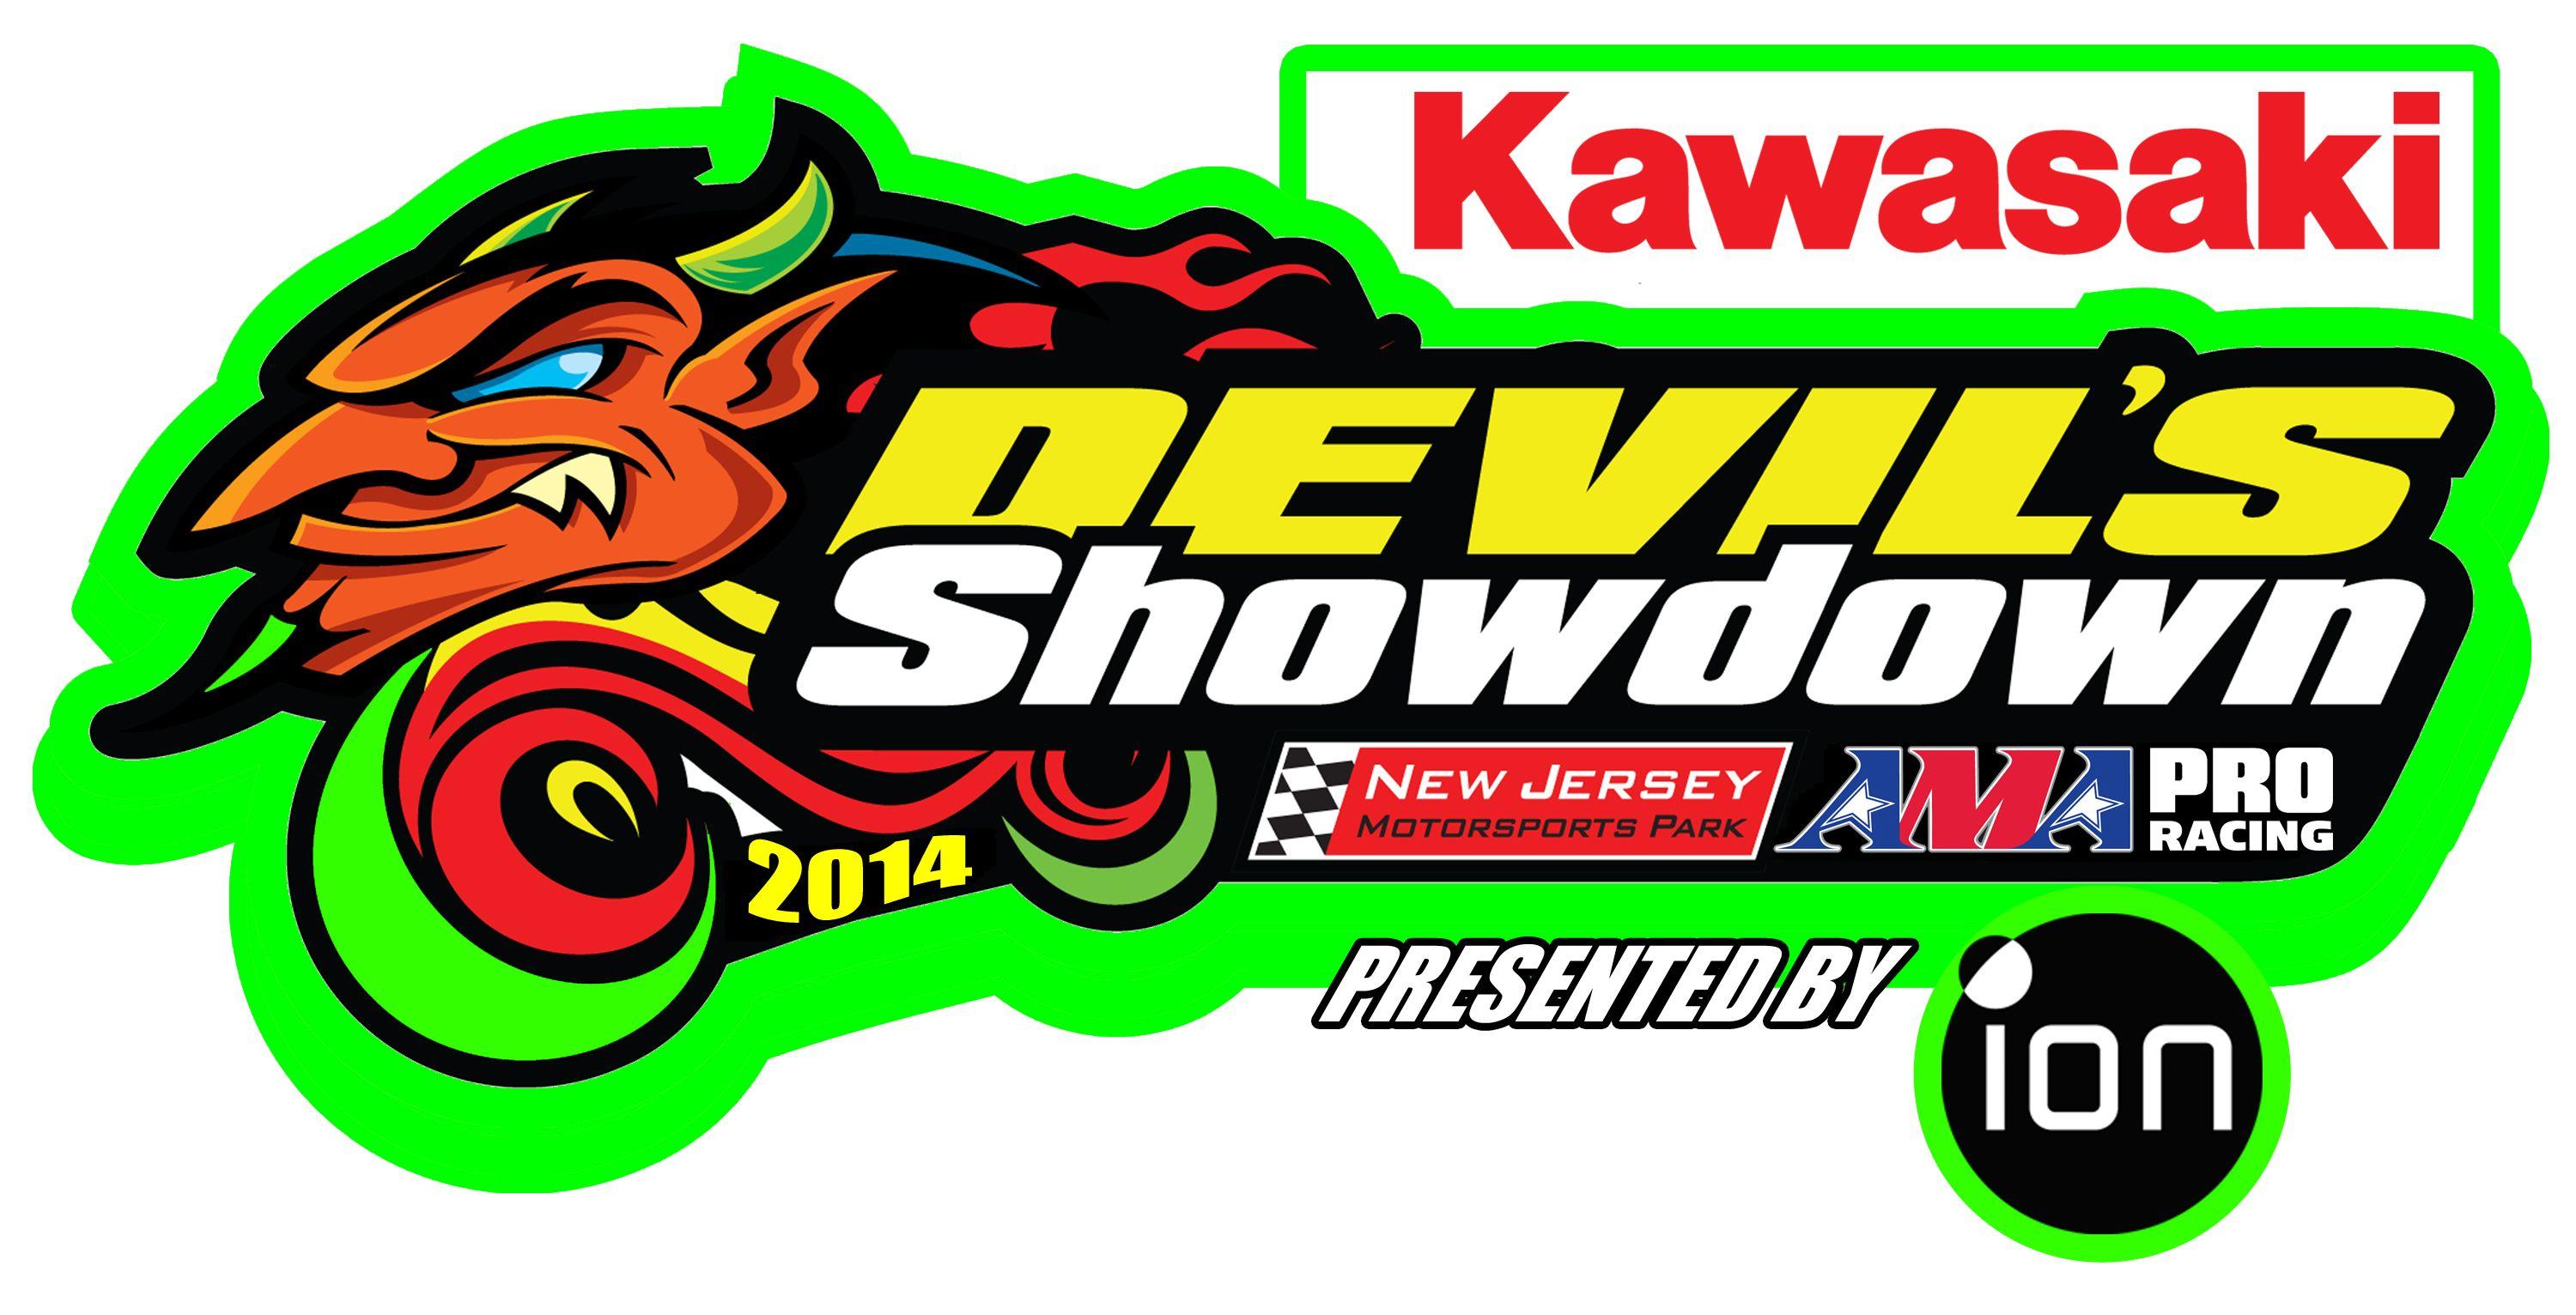 Kawasaki Racing Logo - Kawasaki becomes title sponsor of AMA Pro Road Racing at NJMP | New ...